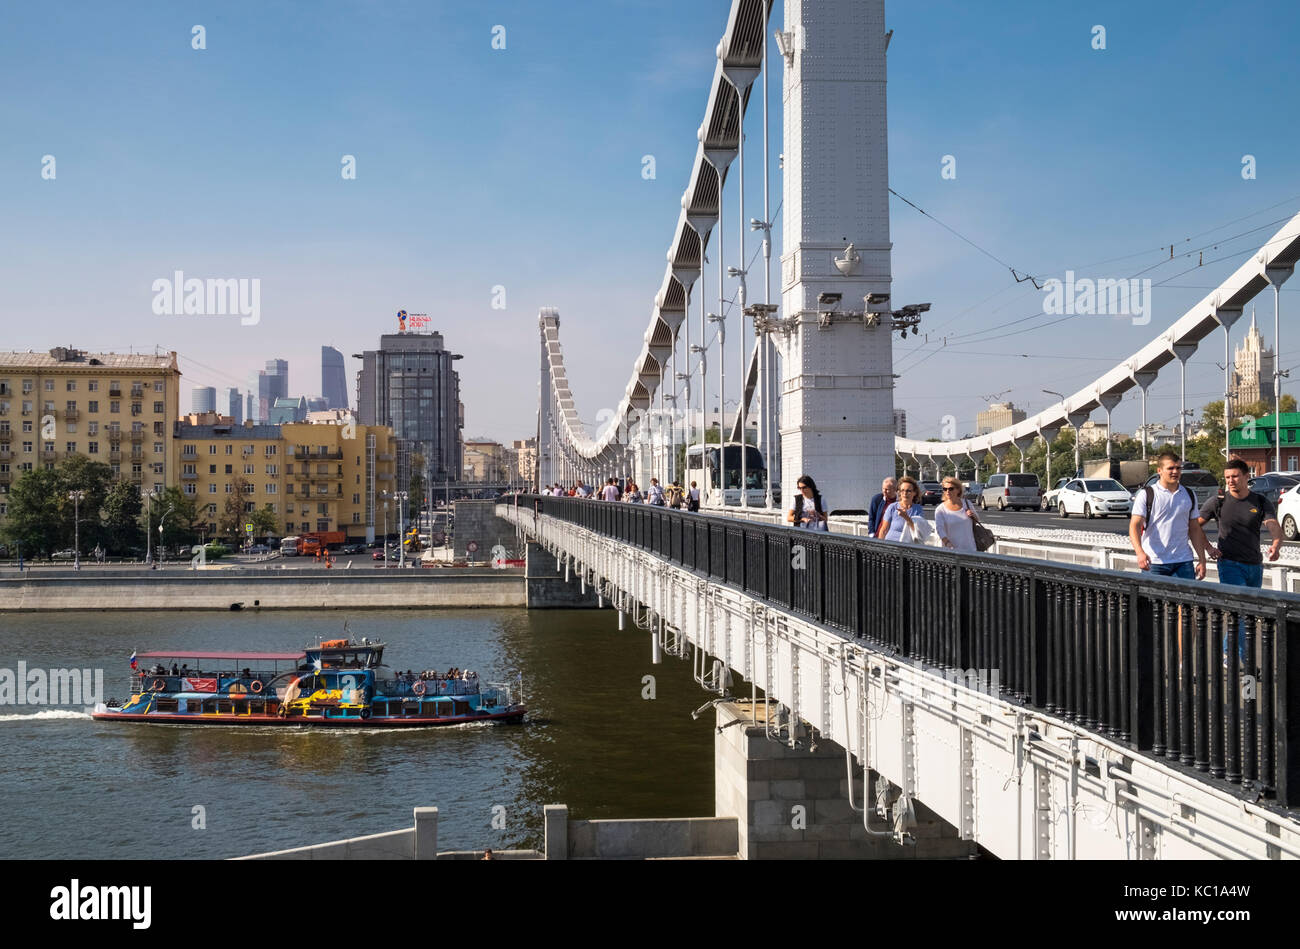 Les gens et les voitures traversant le pont de Crimée (Pont Krymsky) sur la rivière Moskva, à l'ouest en direction de nab Frunzenskaya, Moscou, Russie. Banque D'Images